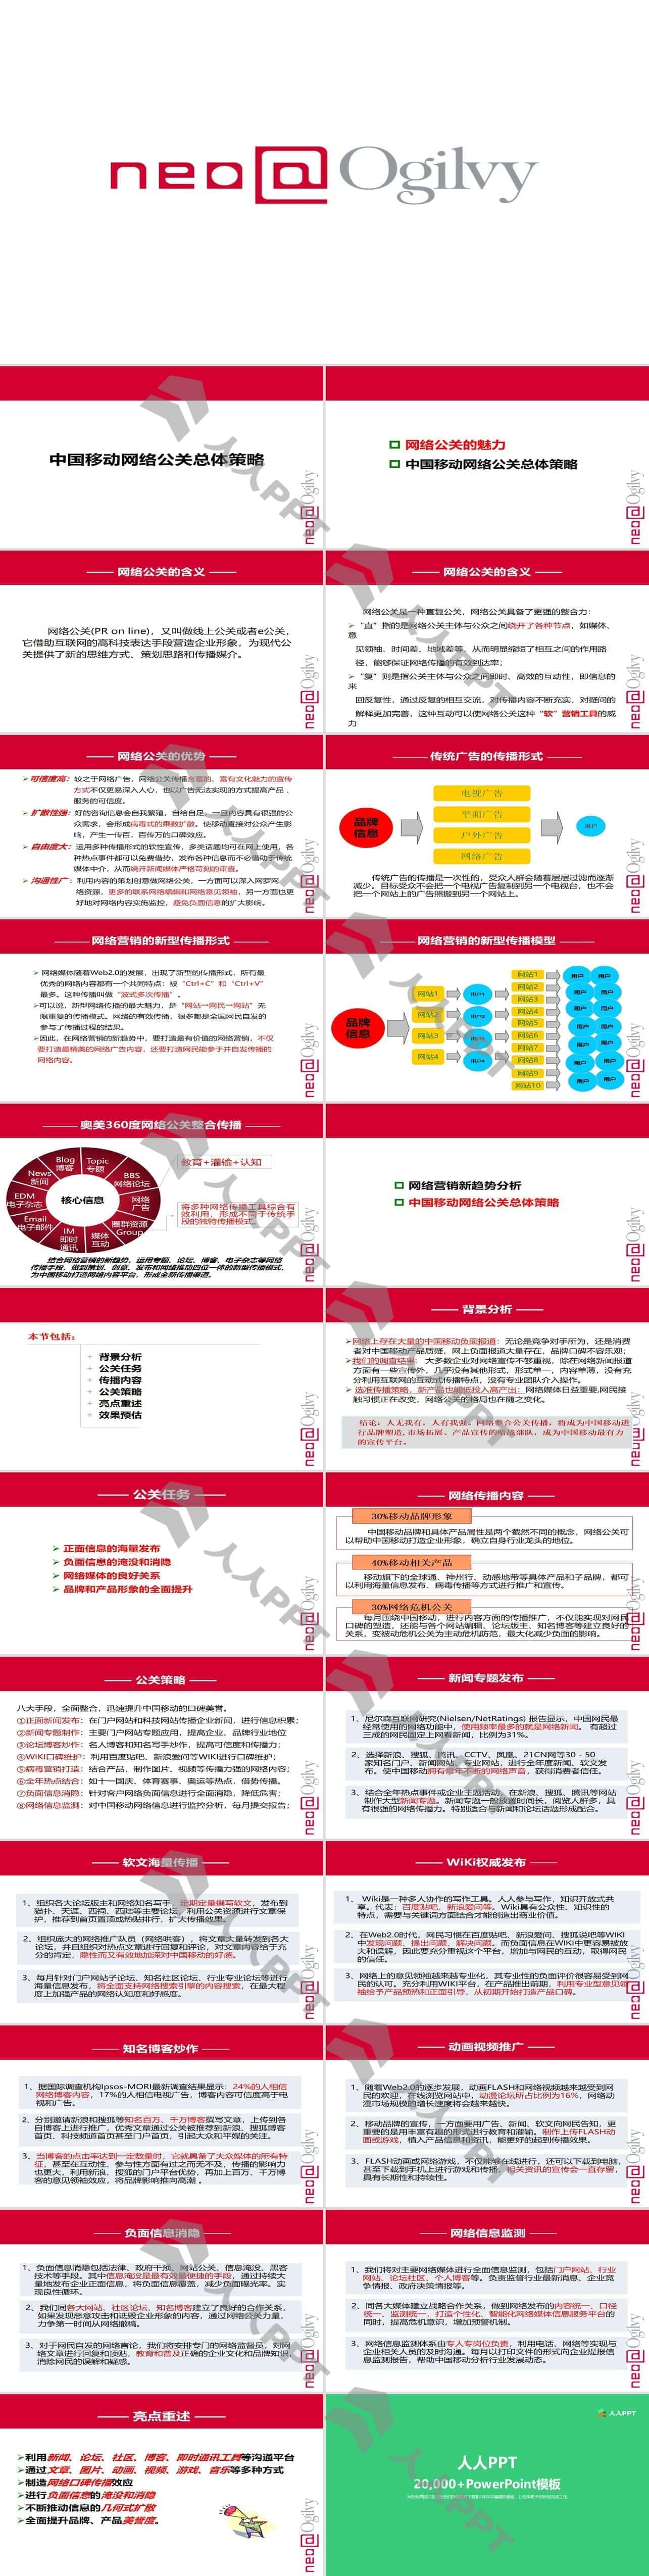 中国移动网络公关总体策略方案PPT模板长图